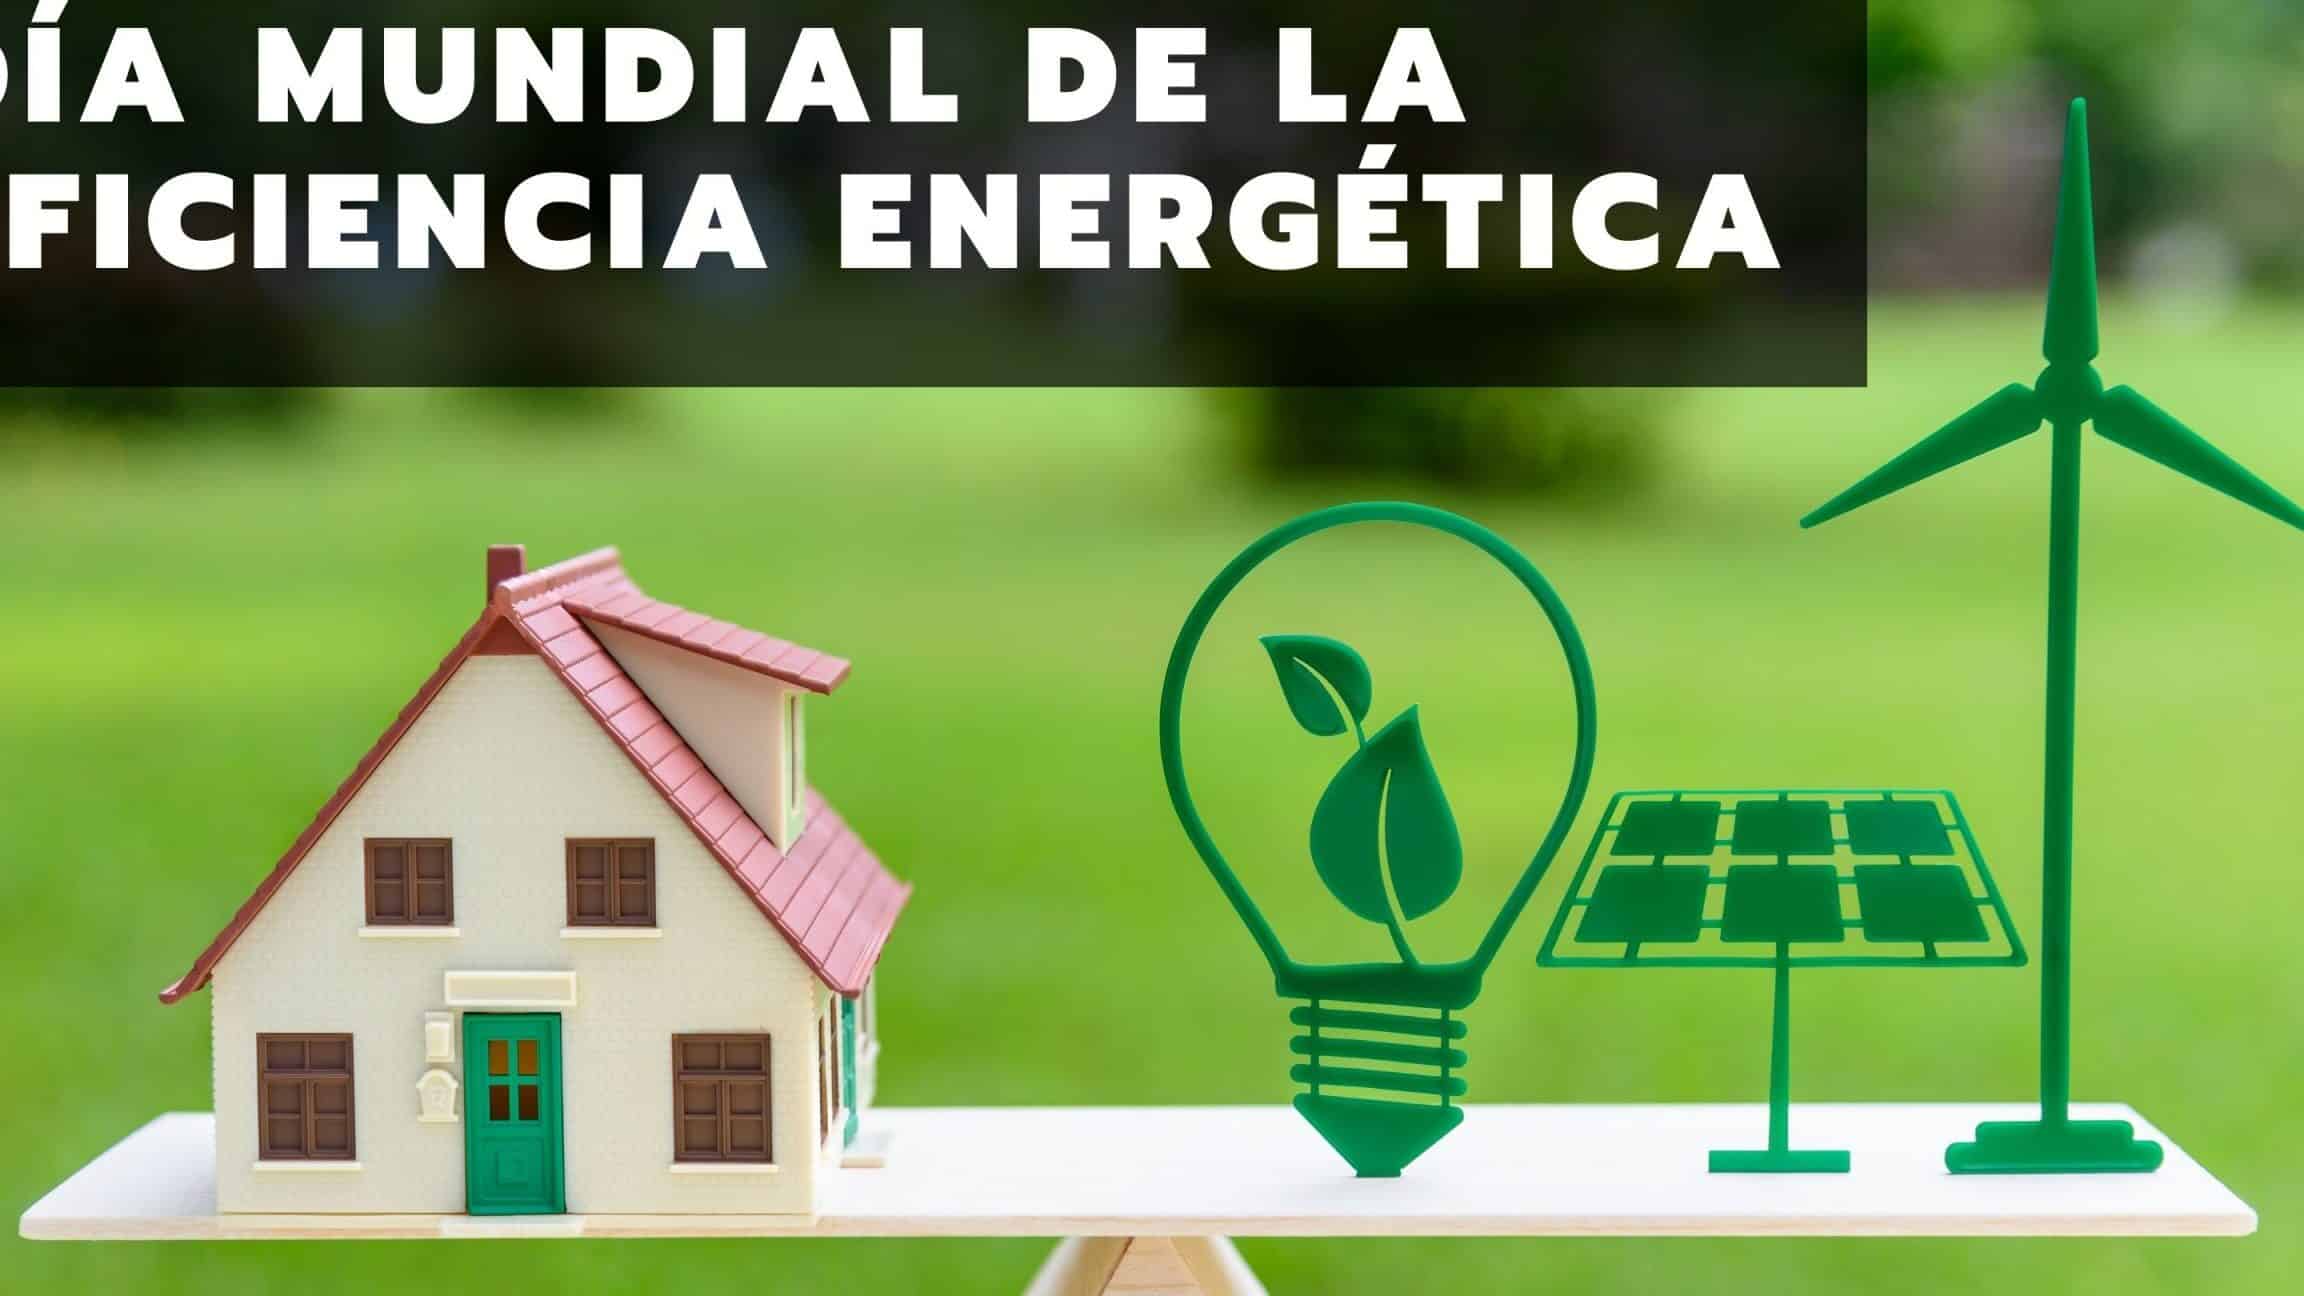 dia mundial de la eficiencia energetica 5 de marzo